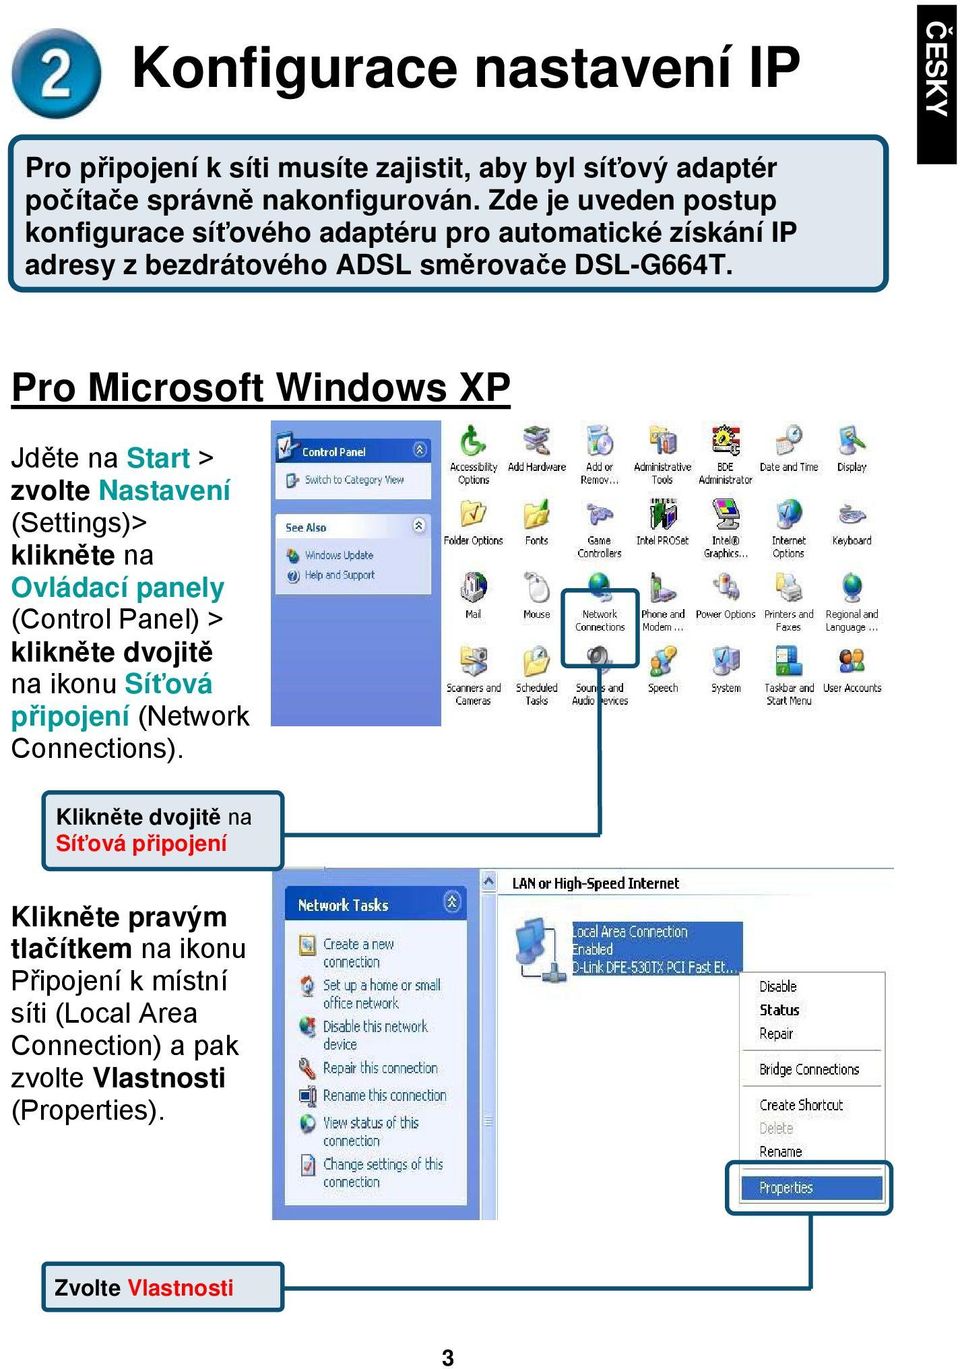 Pro Microsoft Windows XP Jděte na Start > zvolte Nastavení (Settings)> Ovládací panely (Control Panel) > klikněte dvojitě na ikonu Síťová připojení